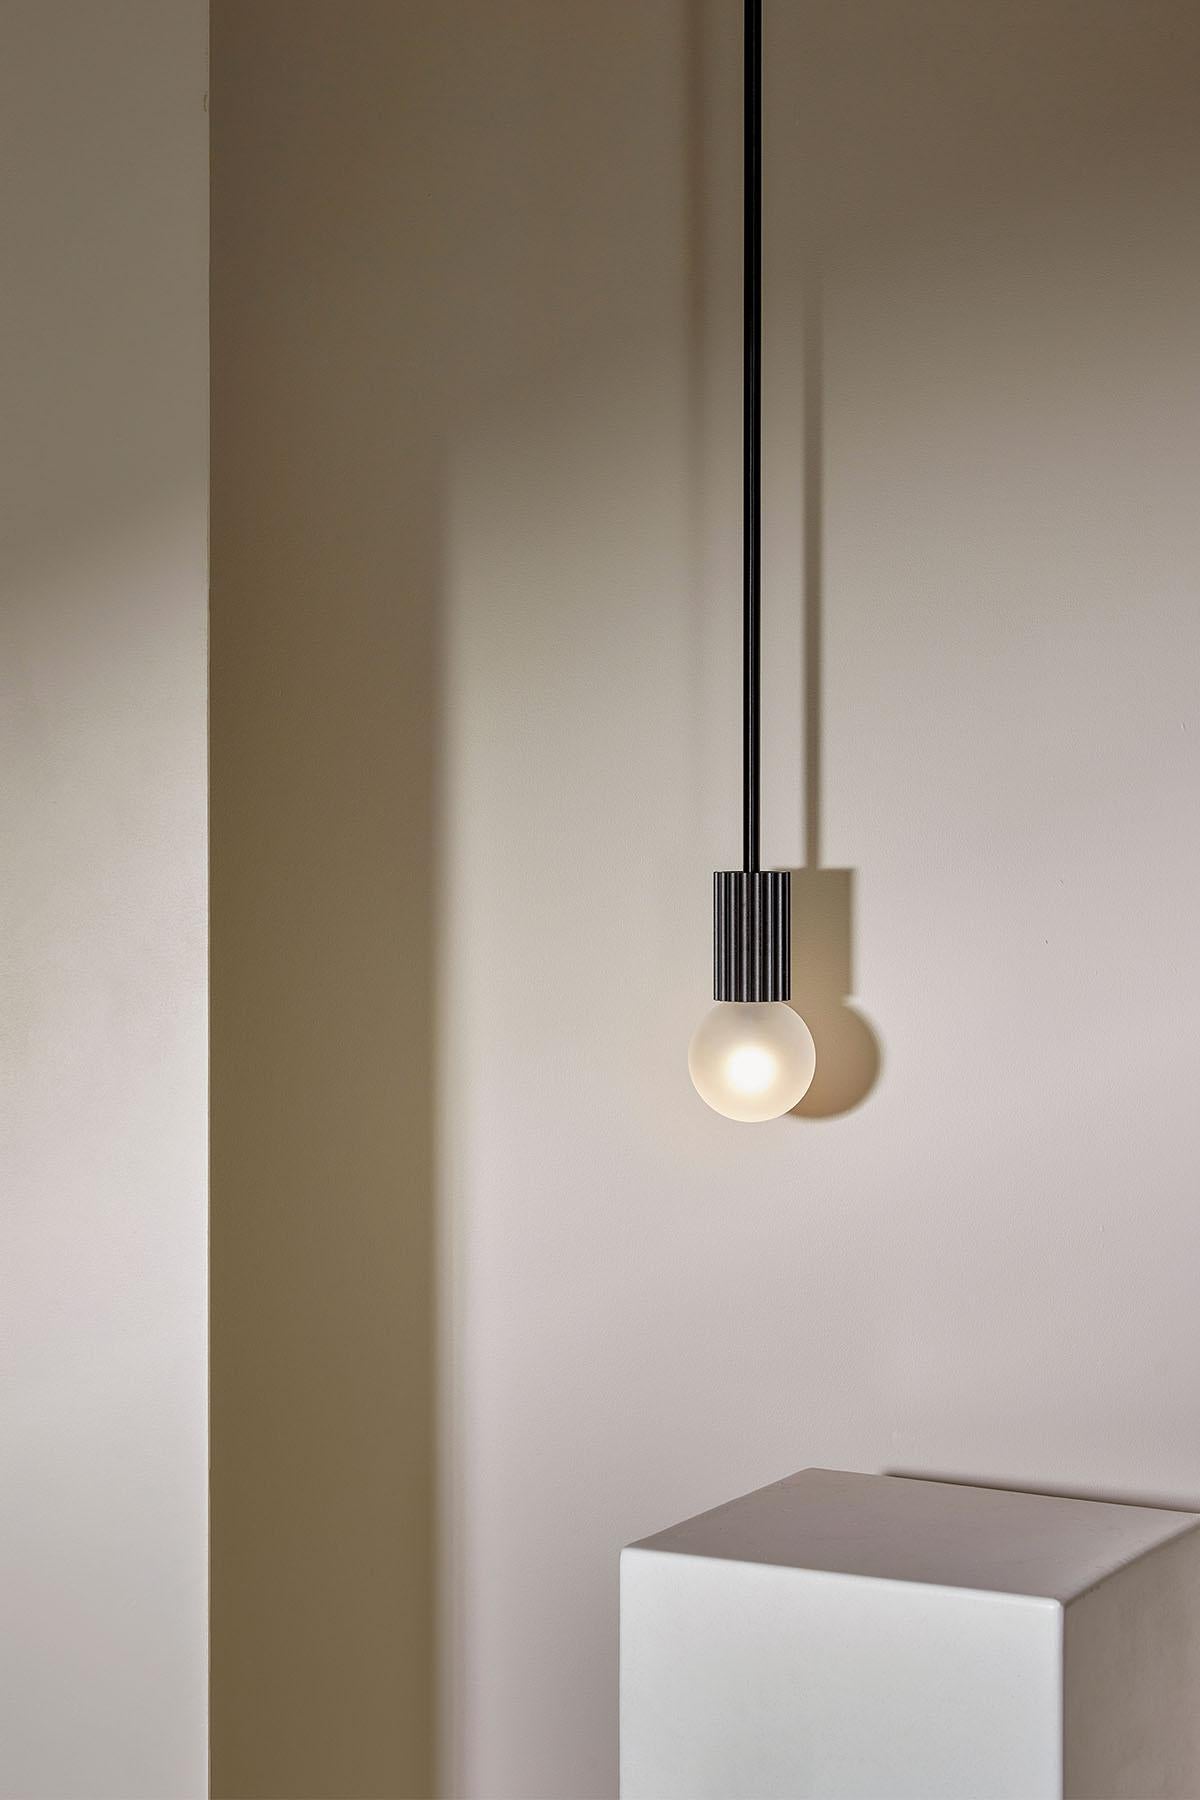 La lampe suspendue Attalos, 95 est une lampe LED classique et sculpturale. Chaque pièce de la gamme Attalos s'inspire des colonnes cannelées de la Stoa d'Attalos, à Athènes, et de l'ordre dorique. La lampe suspendue Attalos est dotée d'un globe